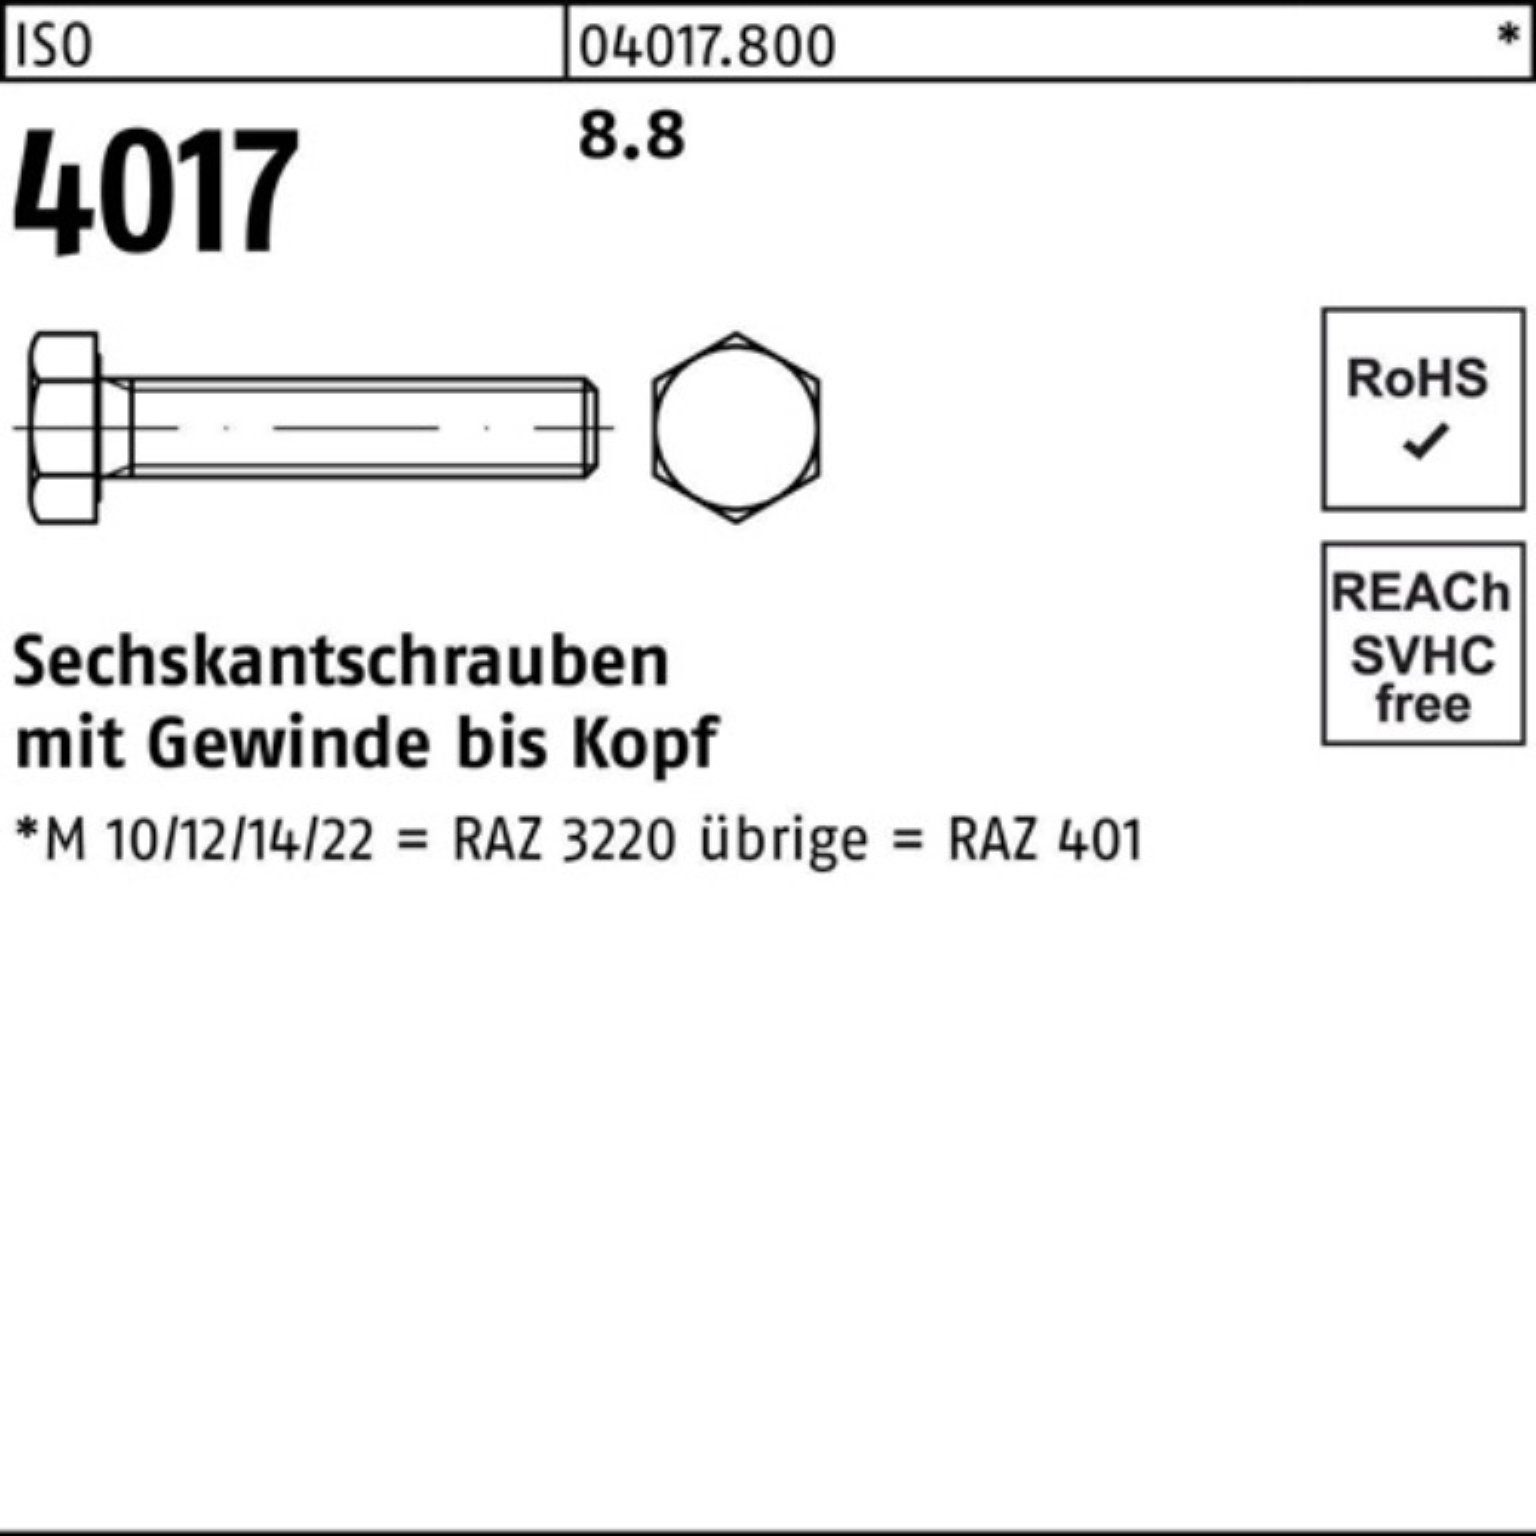 Bufab Sechskantschraube Stück ISO Sechskantschraube 100er M27x VG 401 Pack 4017 8.8 ISO 1 190